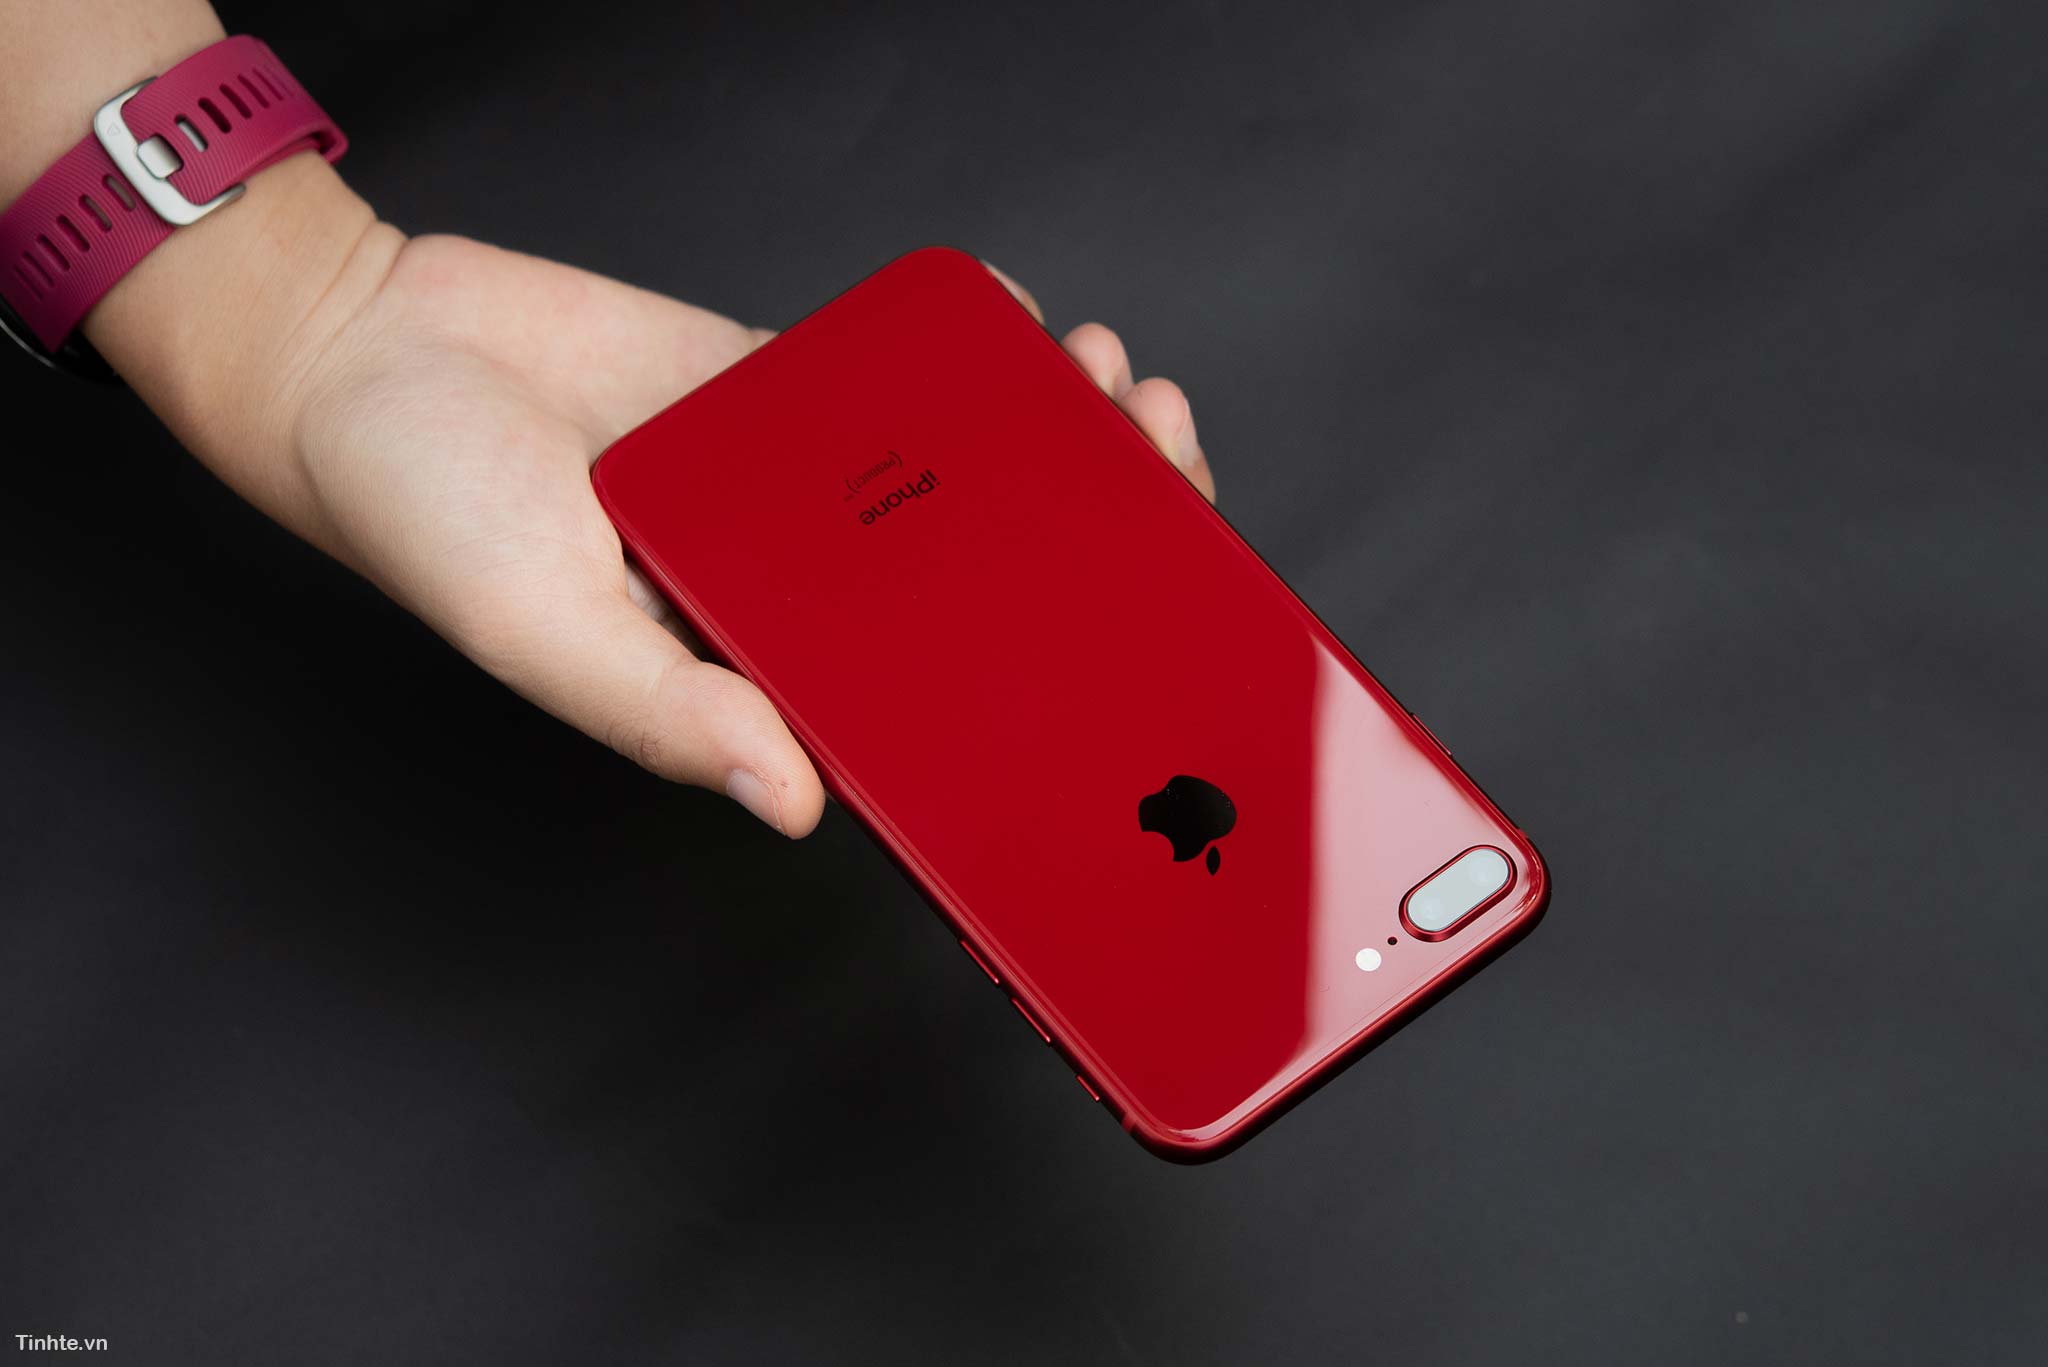 Trên Tay Iphone 8 Plus Đỏ: Vẫn Tươi Nhưng Không Chói, Thật Sự Rất Đẹp! |  Viết Bởi Zyzy1908